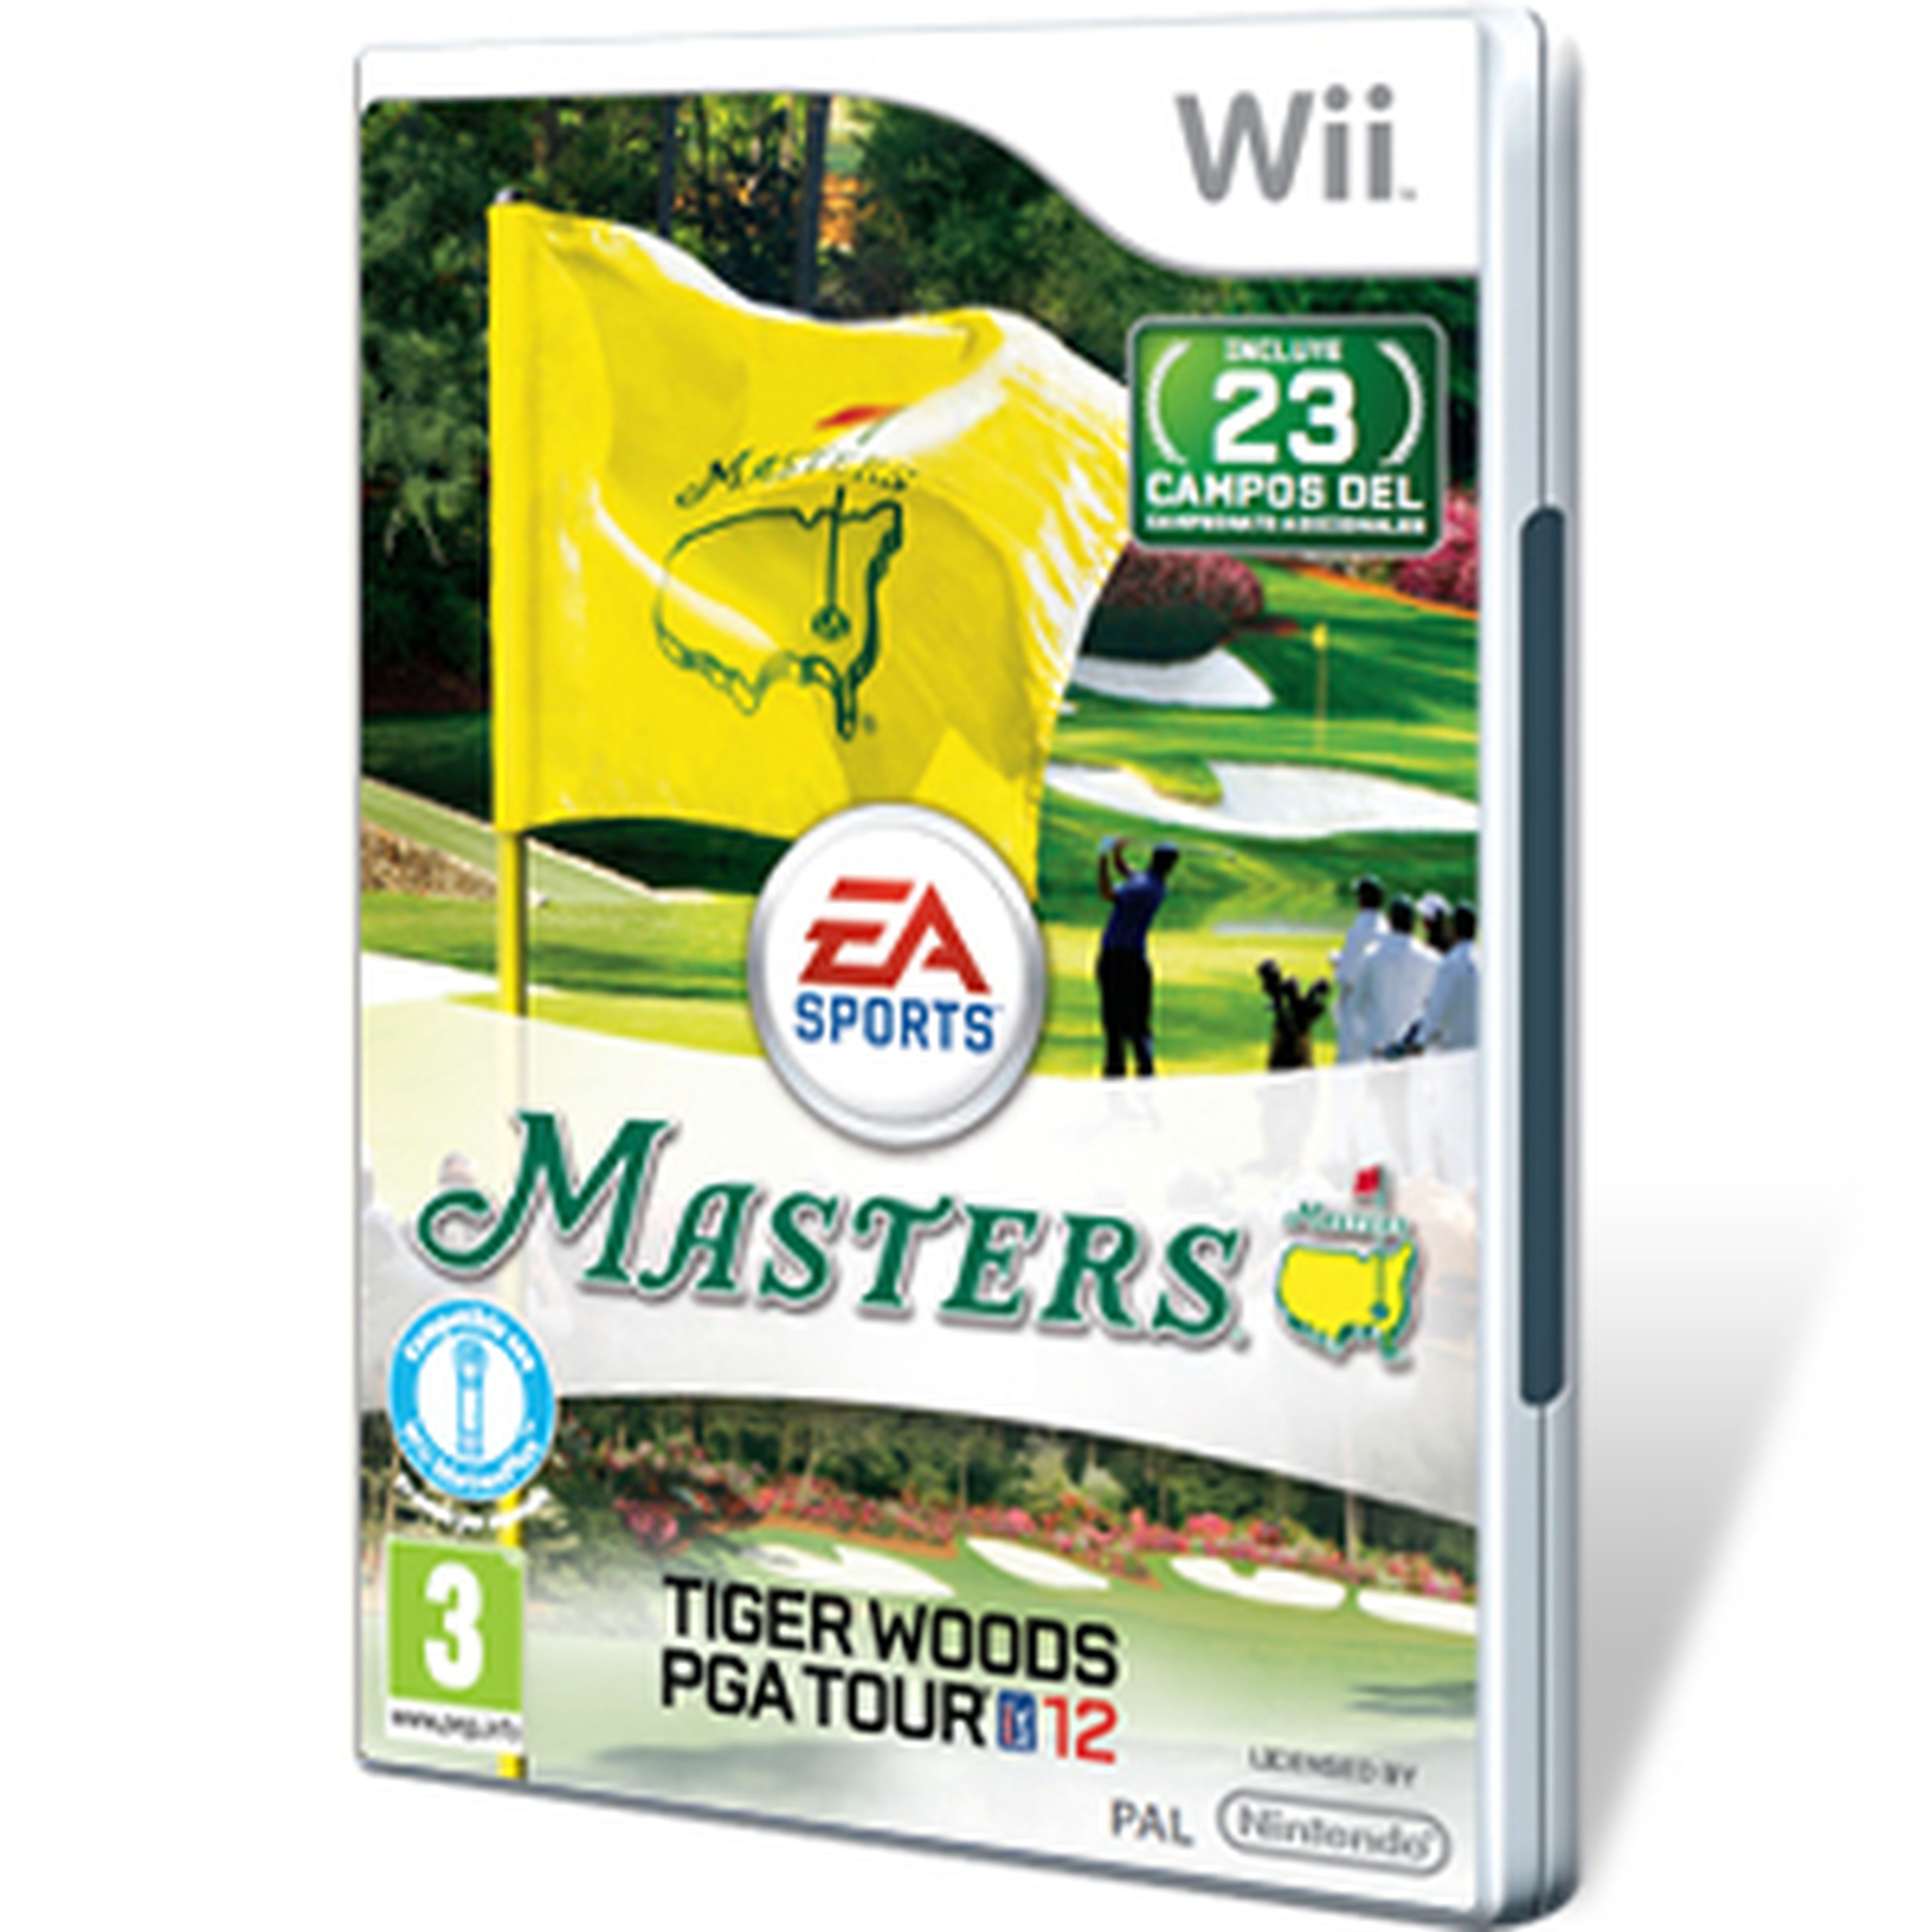 Tiger Woods PGA Tour 12 Masters para Wii